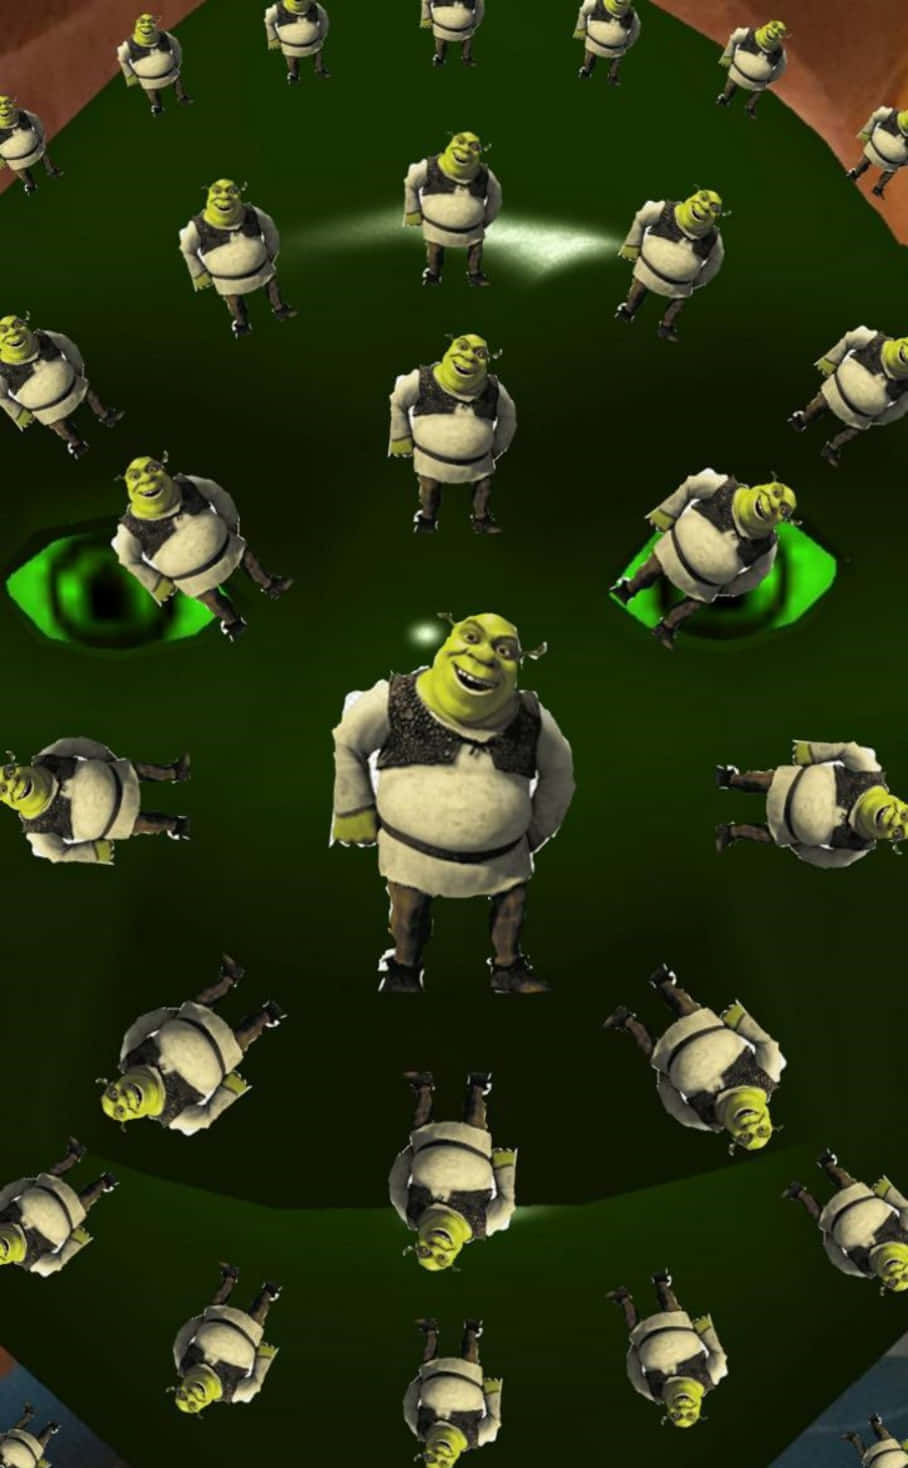 Shrek wallpaper made for my phone. - Shrek